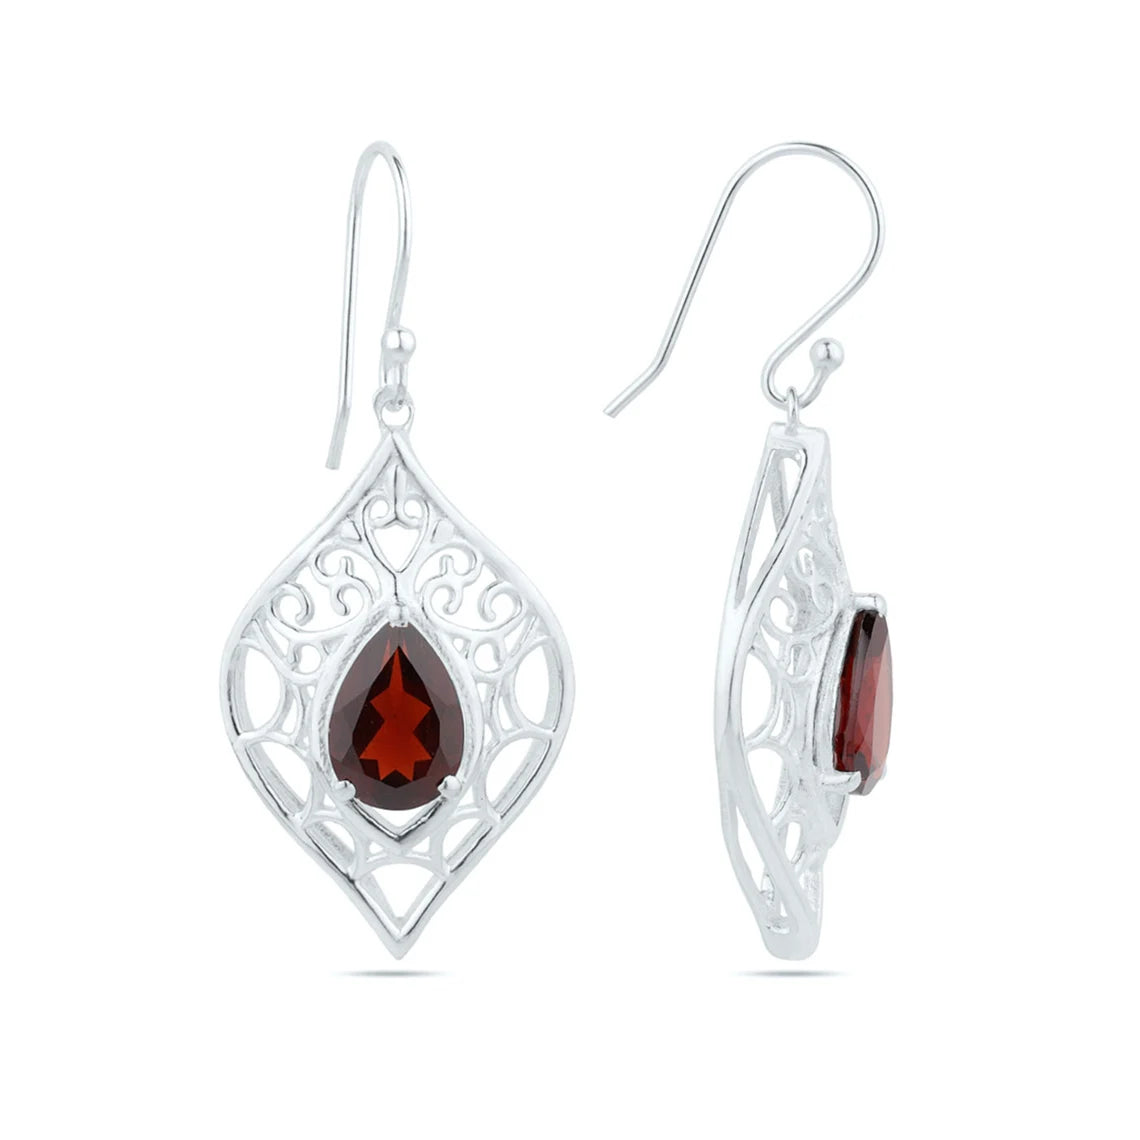 Garnet Sterling Silver Earrings - Dangle earrings